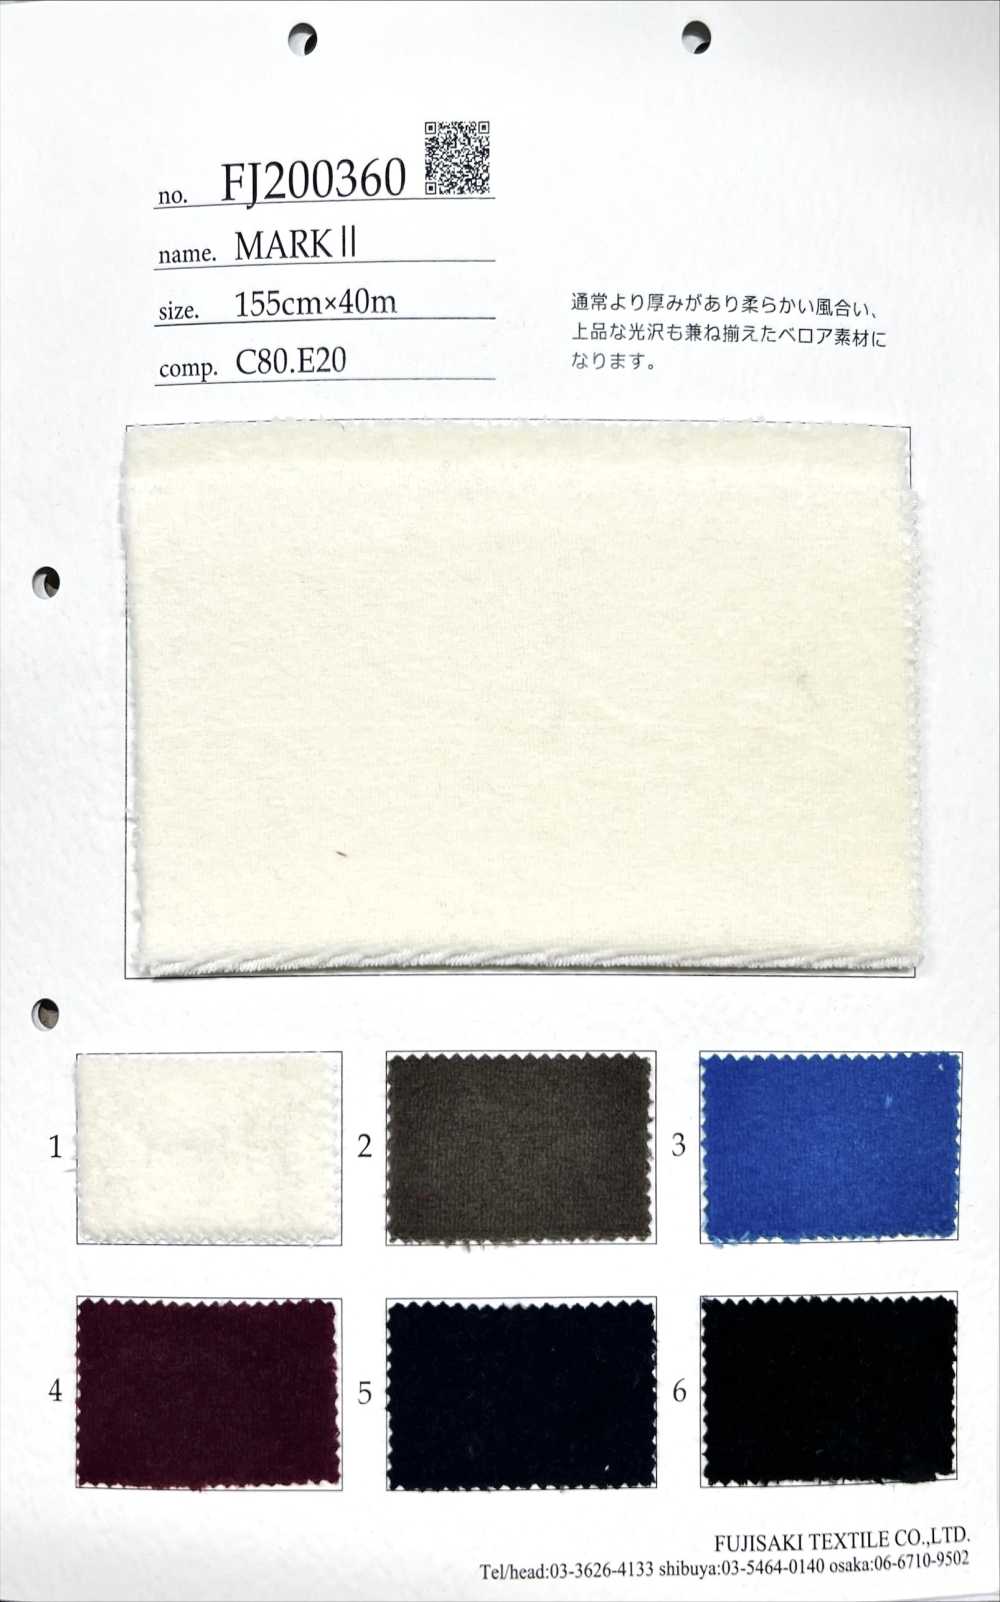 FJ200360 馬克Ⅱ[面料] Fujisaki Textile